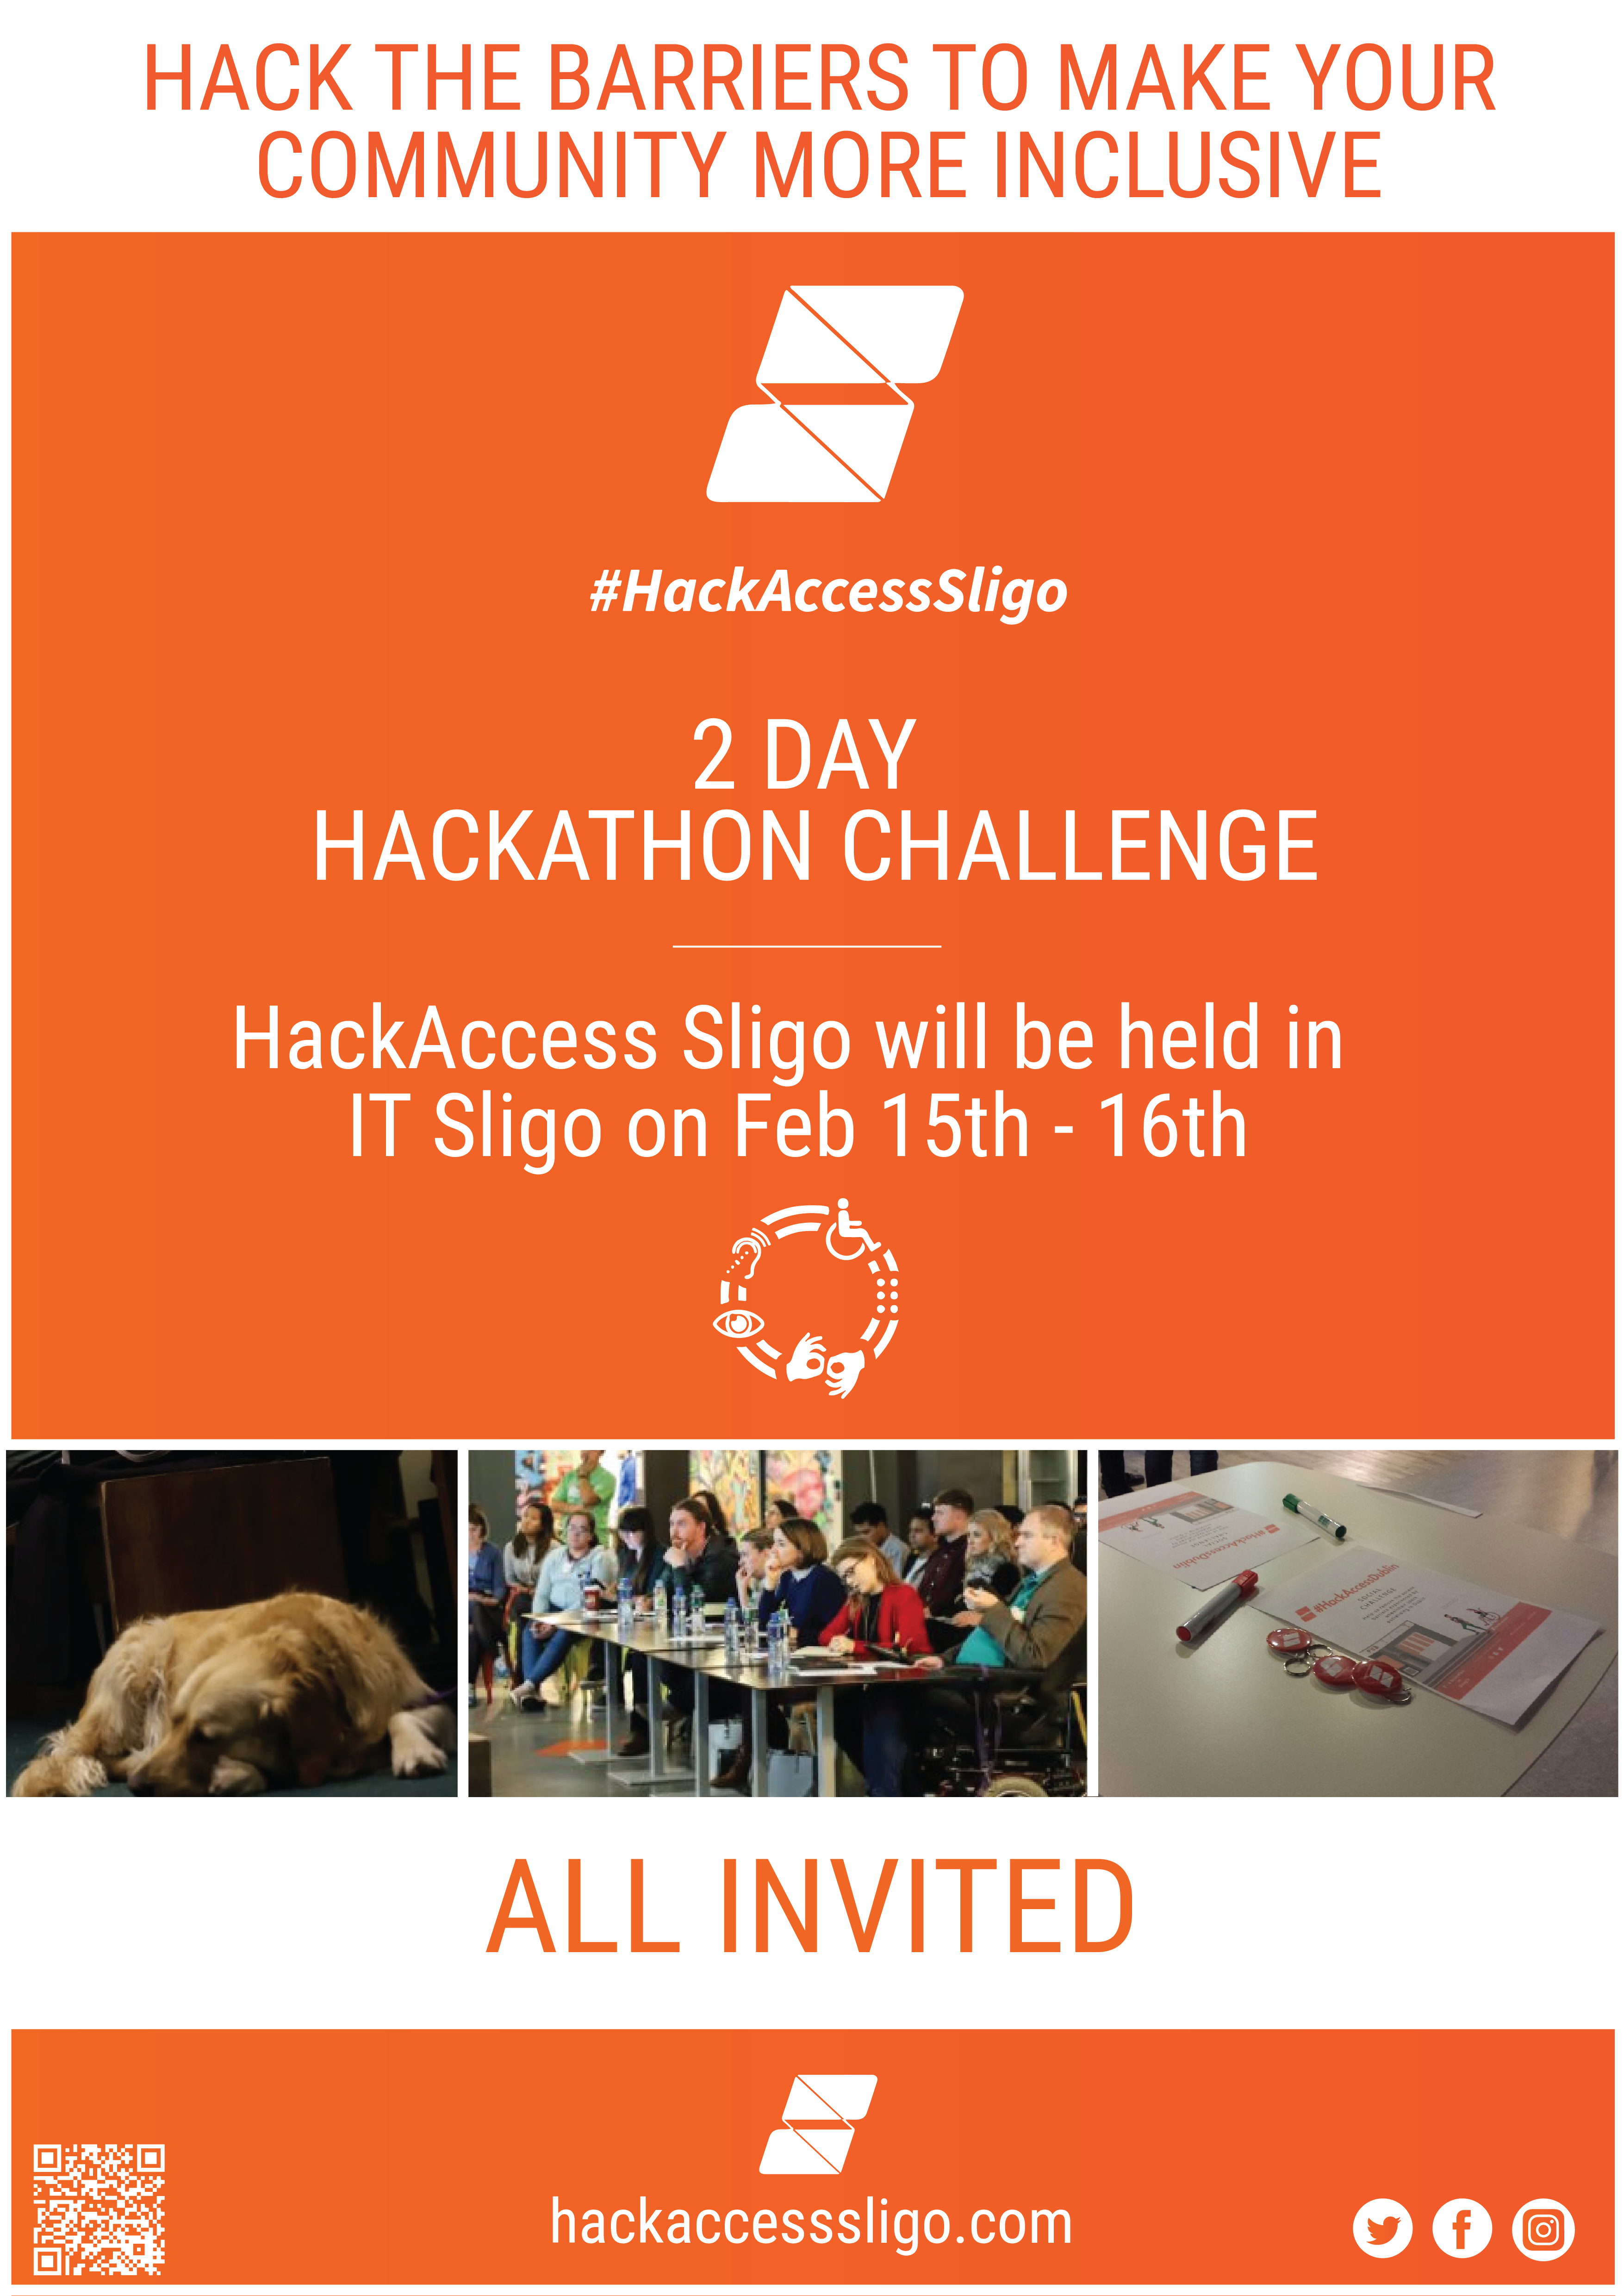 HackAccess Sligo event